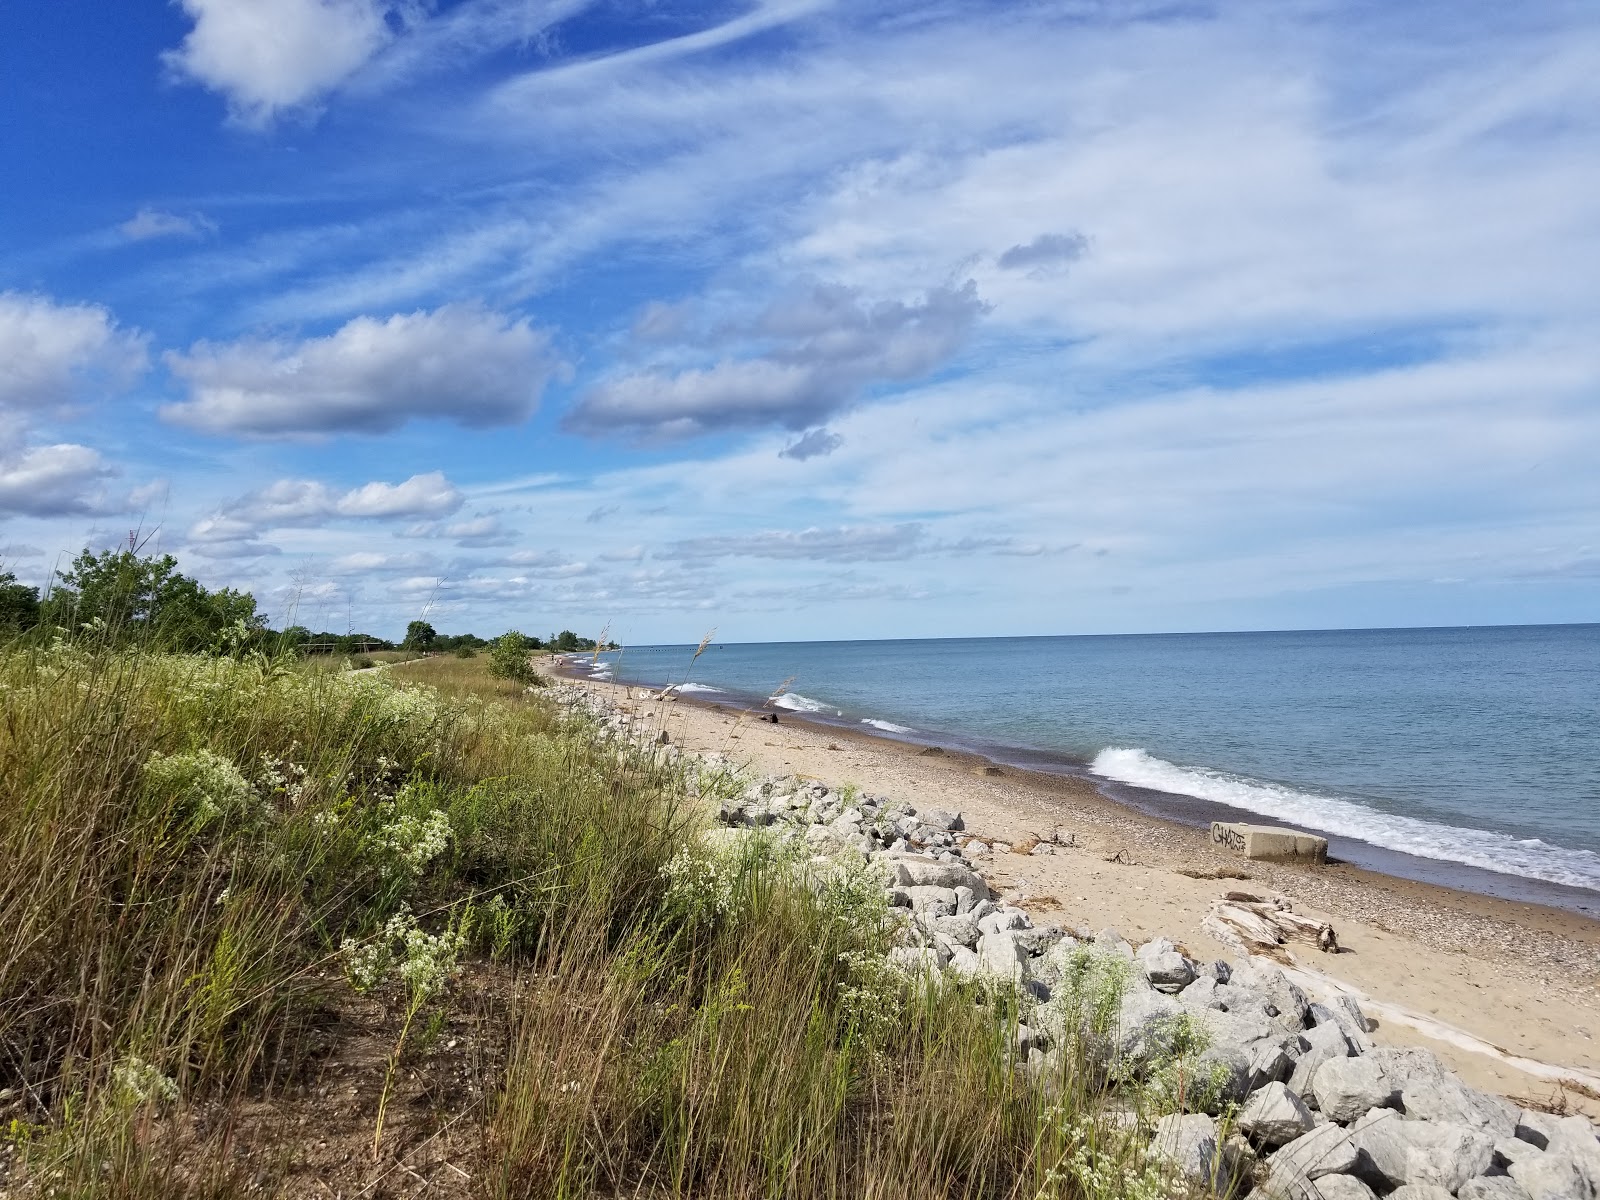 Foto af Illinois Beach - populært sted blandt afslapningskendere